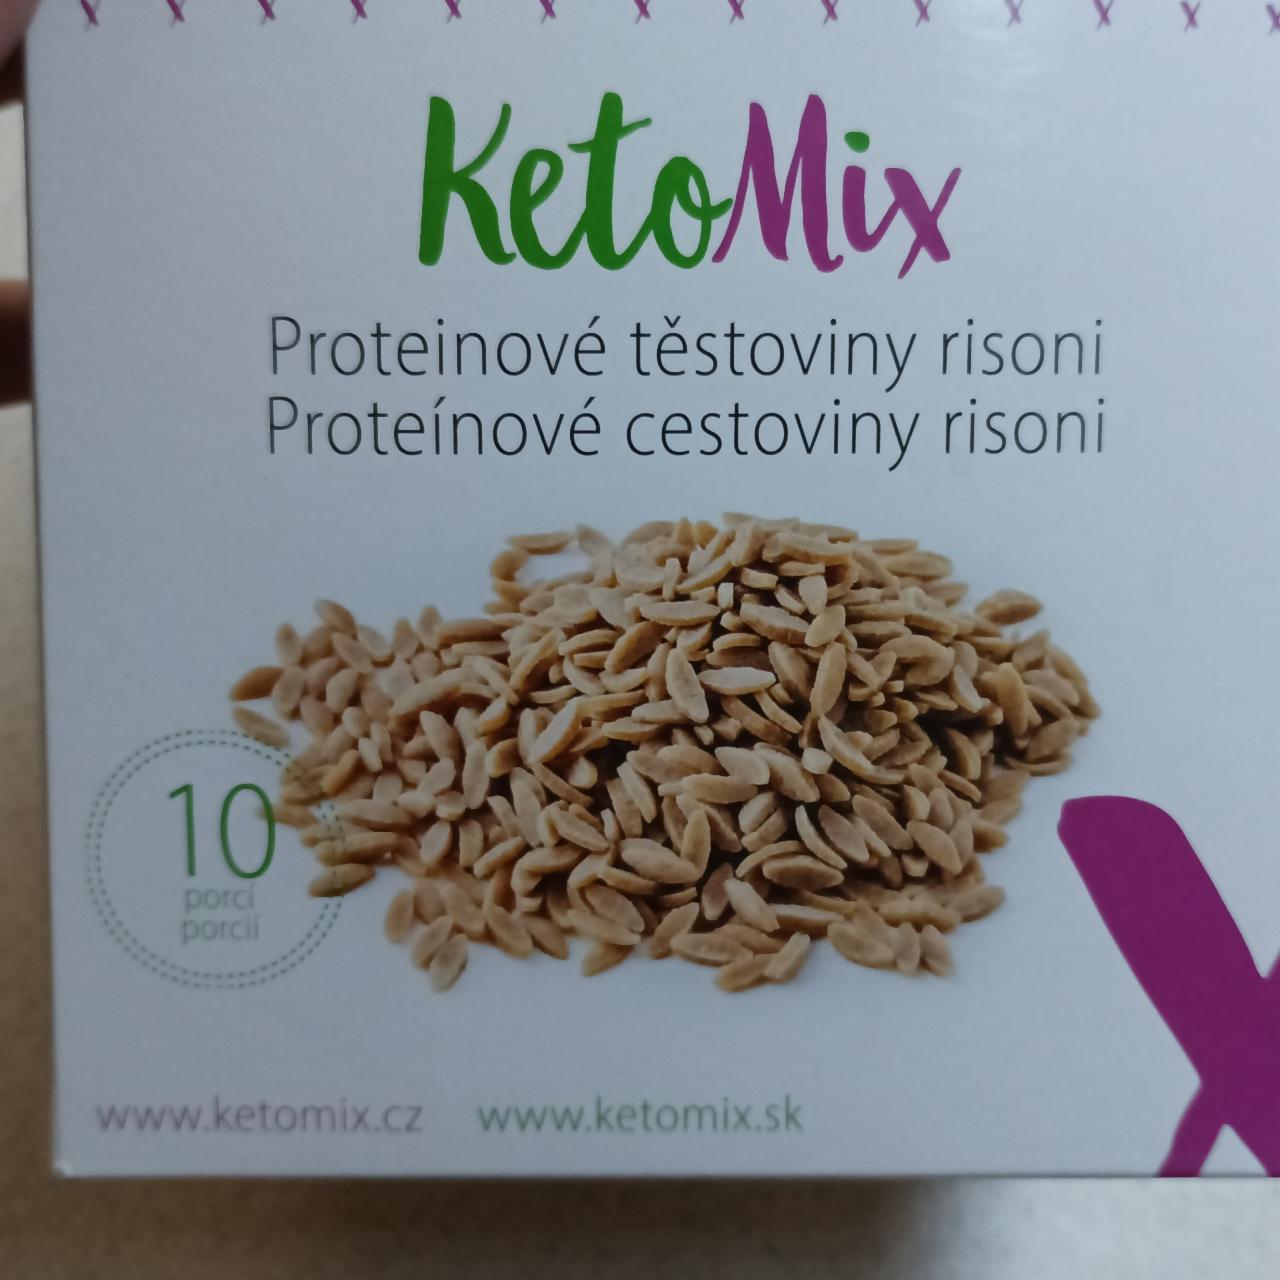 Fotografie - Proteinové těstoviny risoni KetoMix 